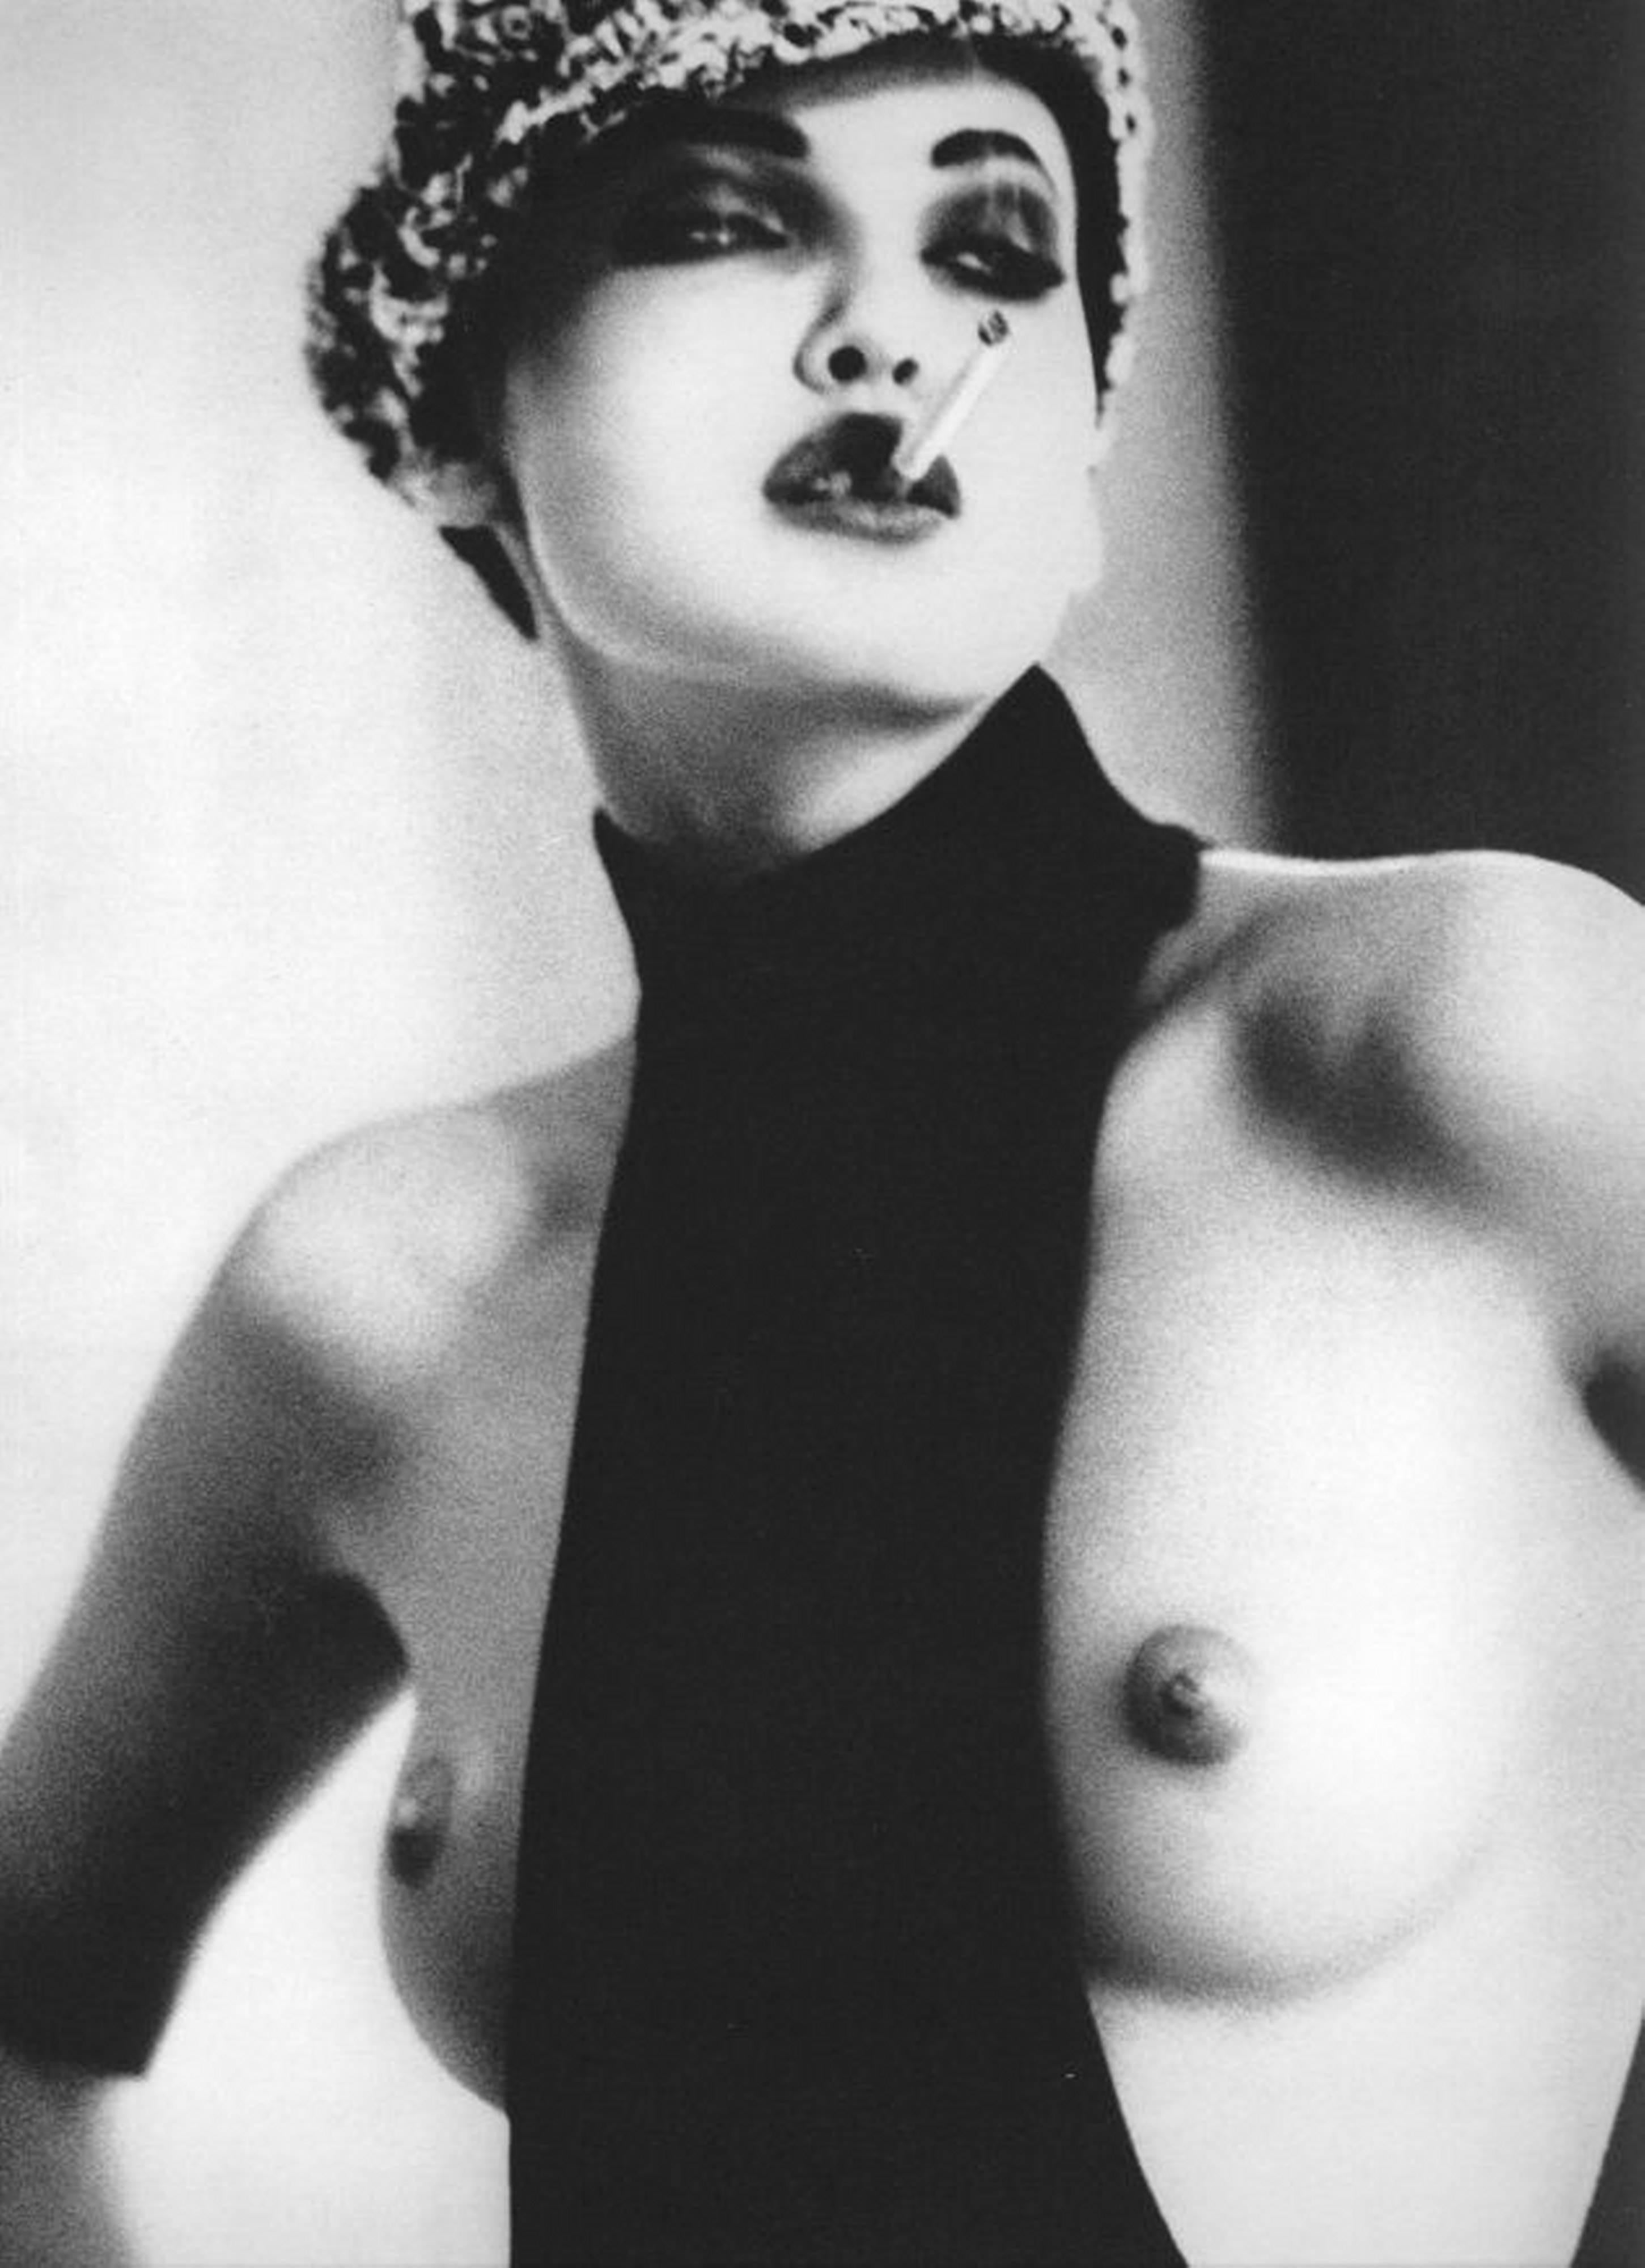 Ellen von Unwerth Nude Photograph - Nadja Auermann, Smoke - nude portrait with cigarette, fine art photography